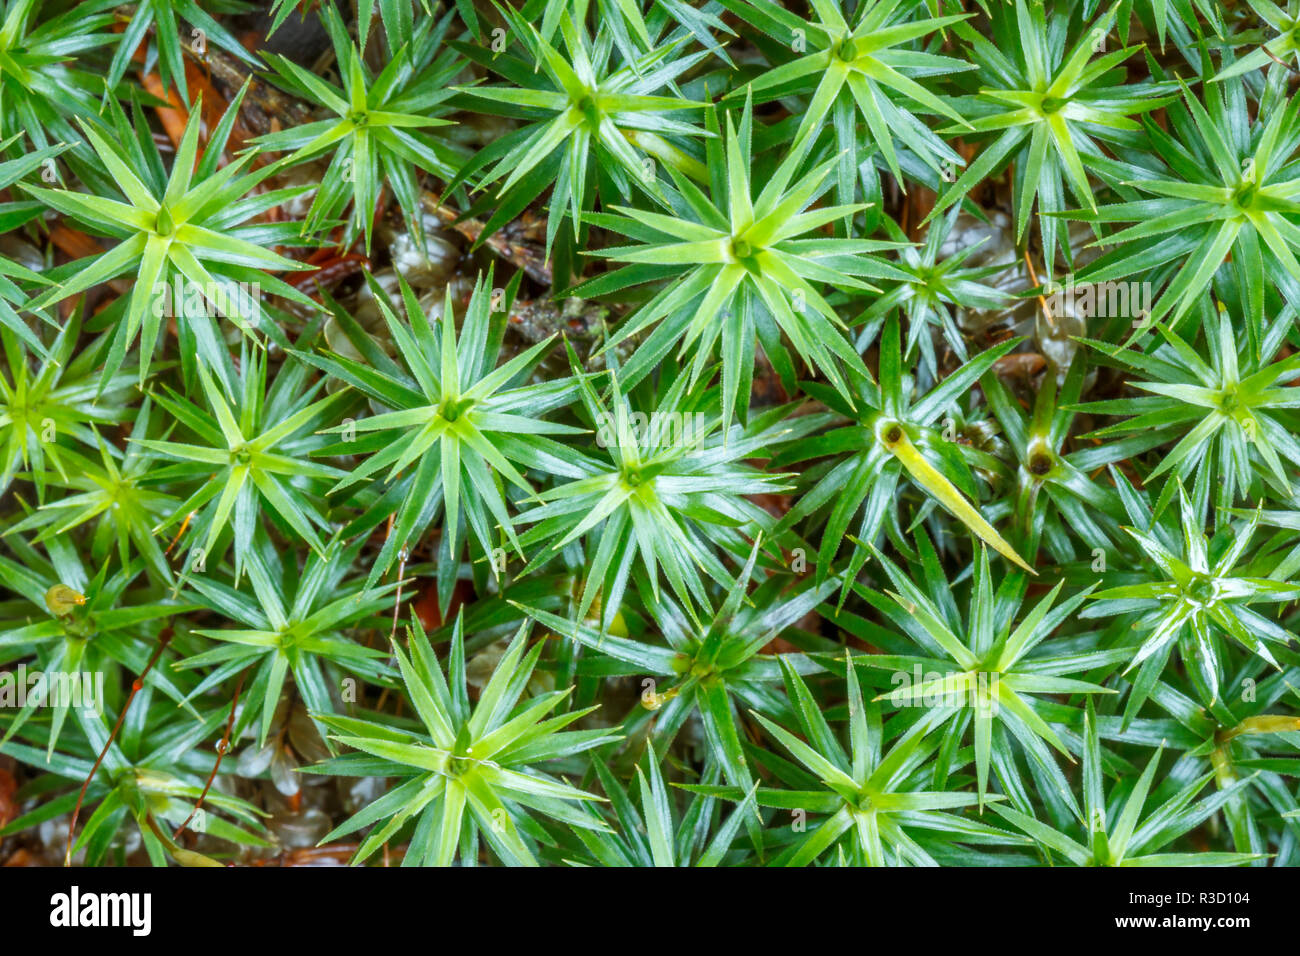 USA, Alaska. Top view of a mat of star shape moss, Pogonatum contortum, near Juneau. Stock Photo